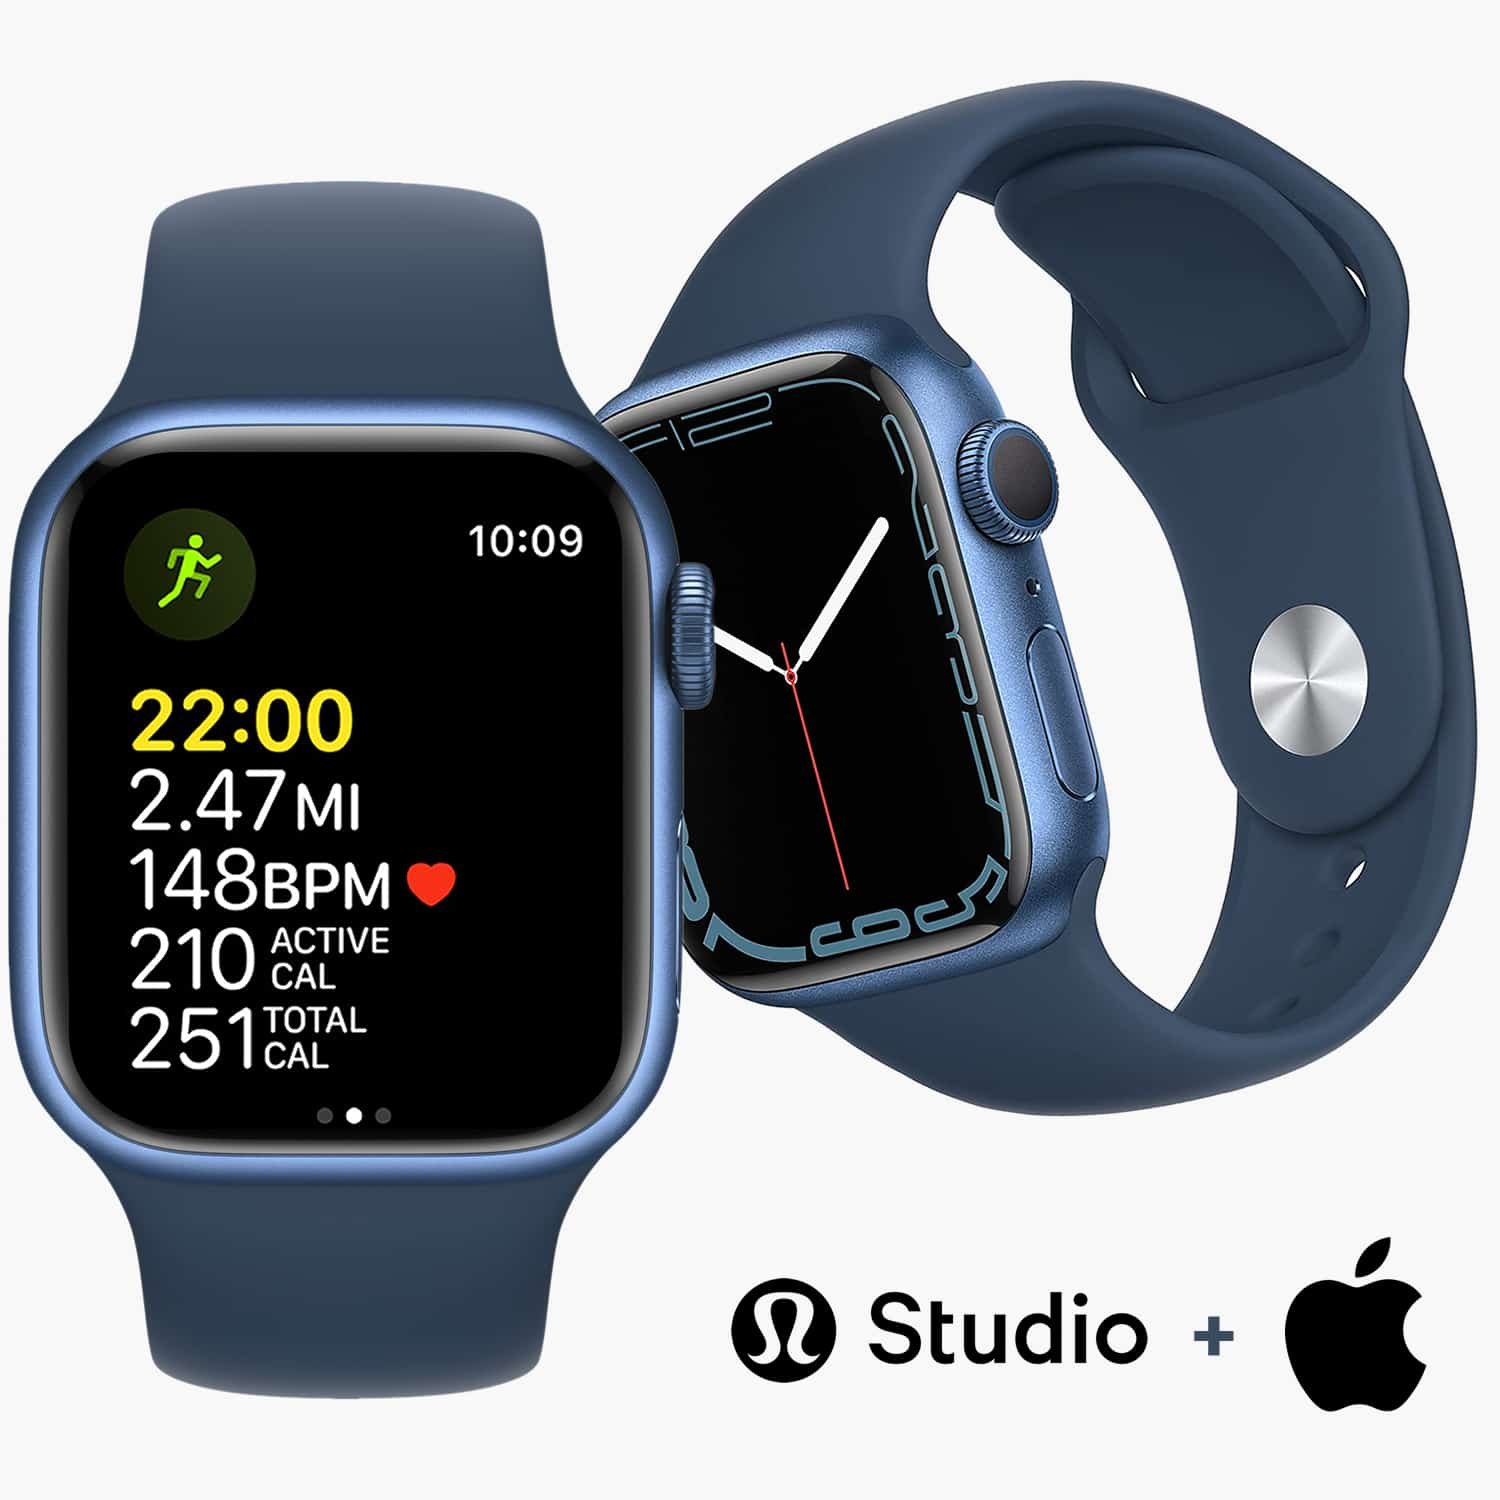 ใช้ Apple Watch ของคุณเป็นจอภาพอัตราการเต้นของหัวใจพร้อมกระจกสตูดิโอโดย Lululemon